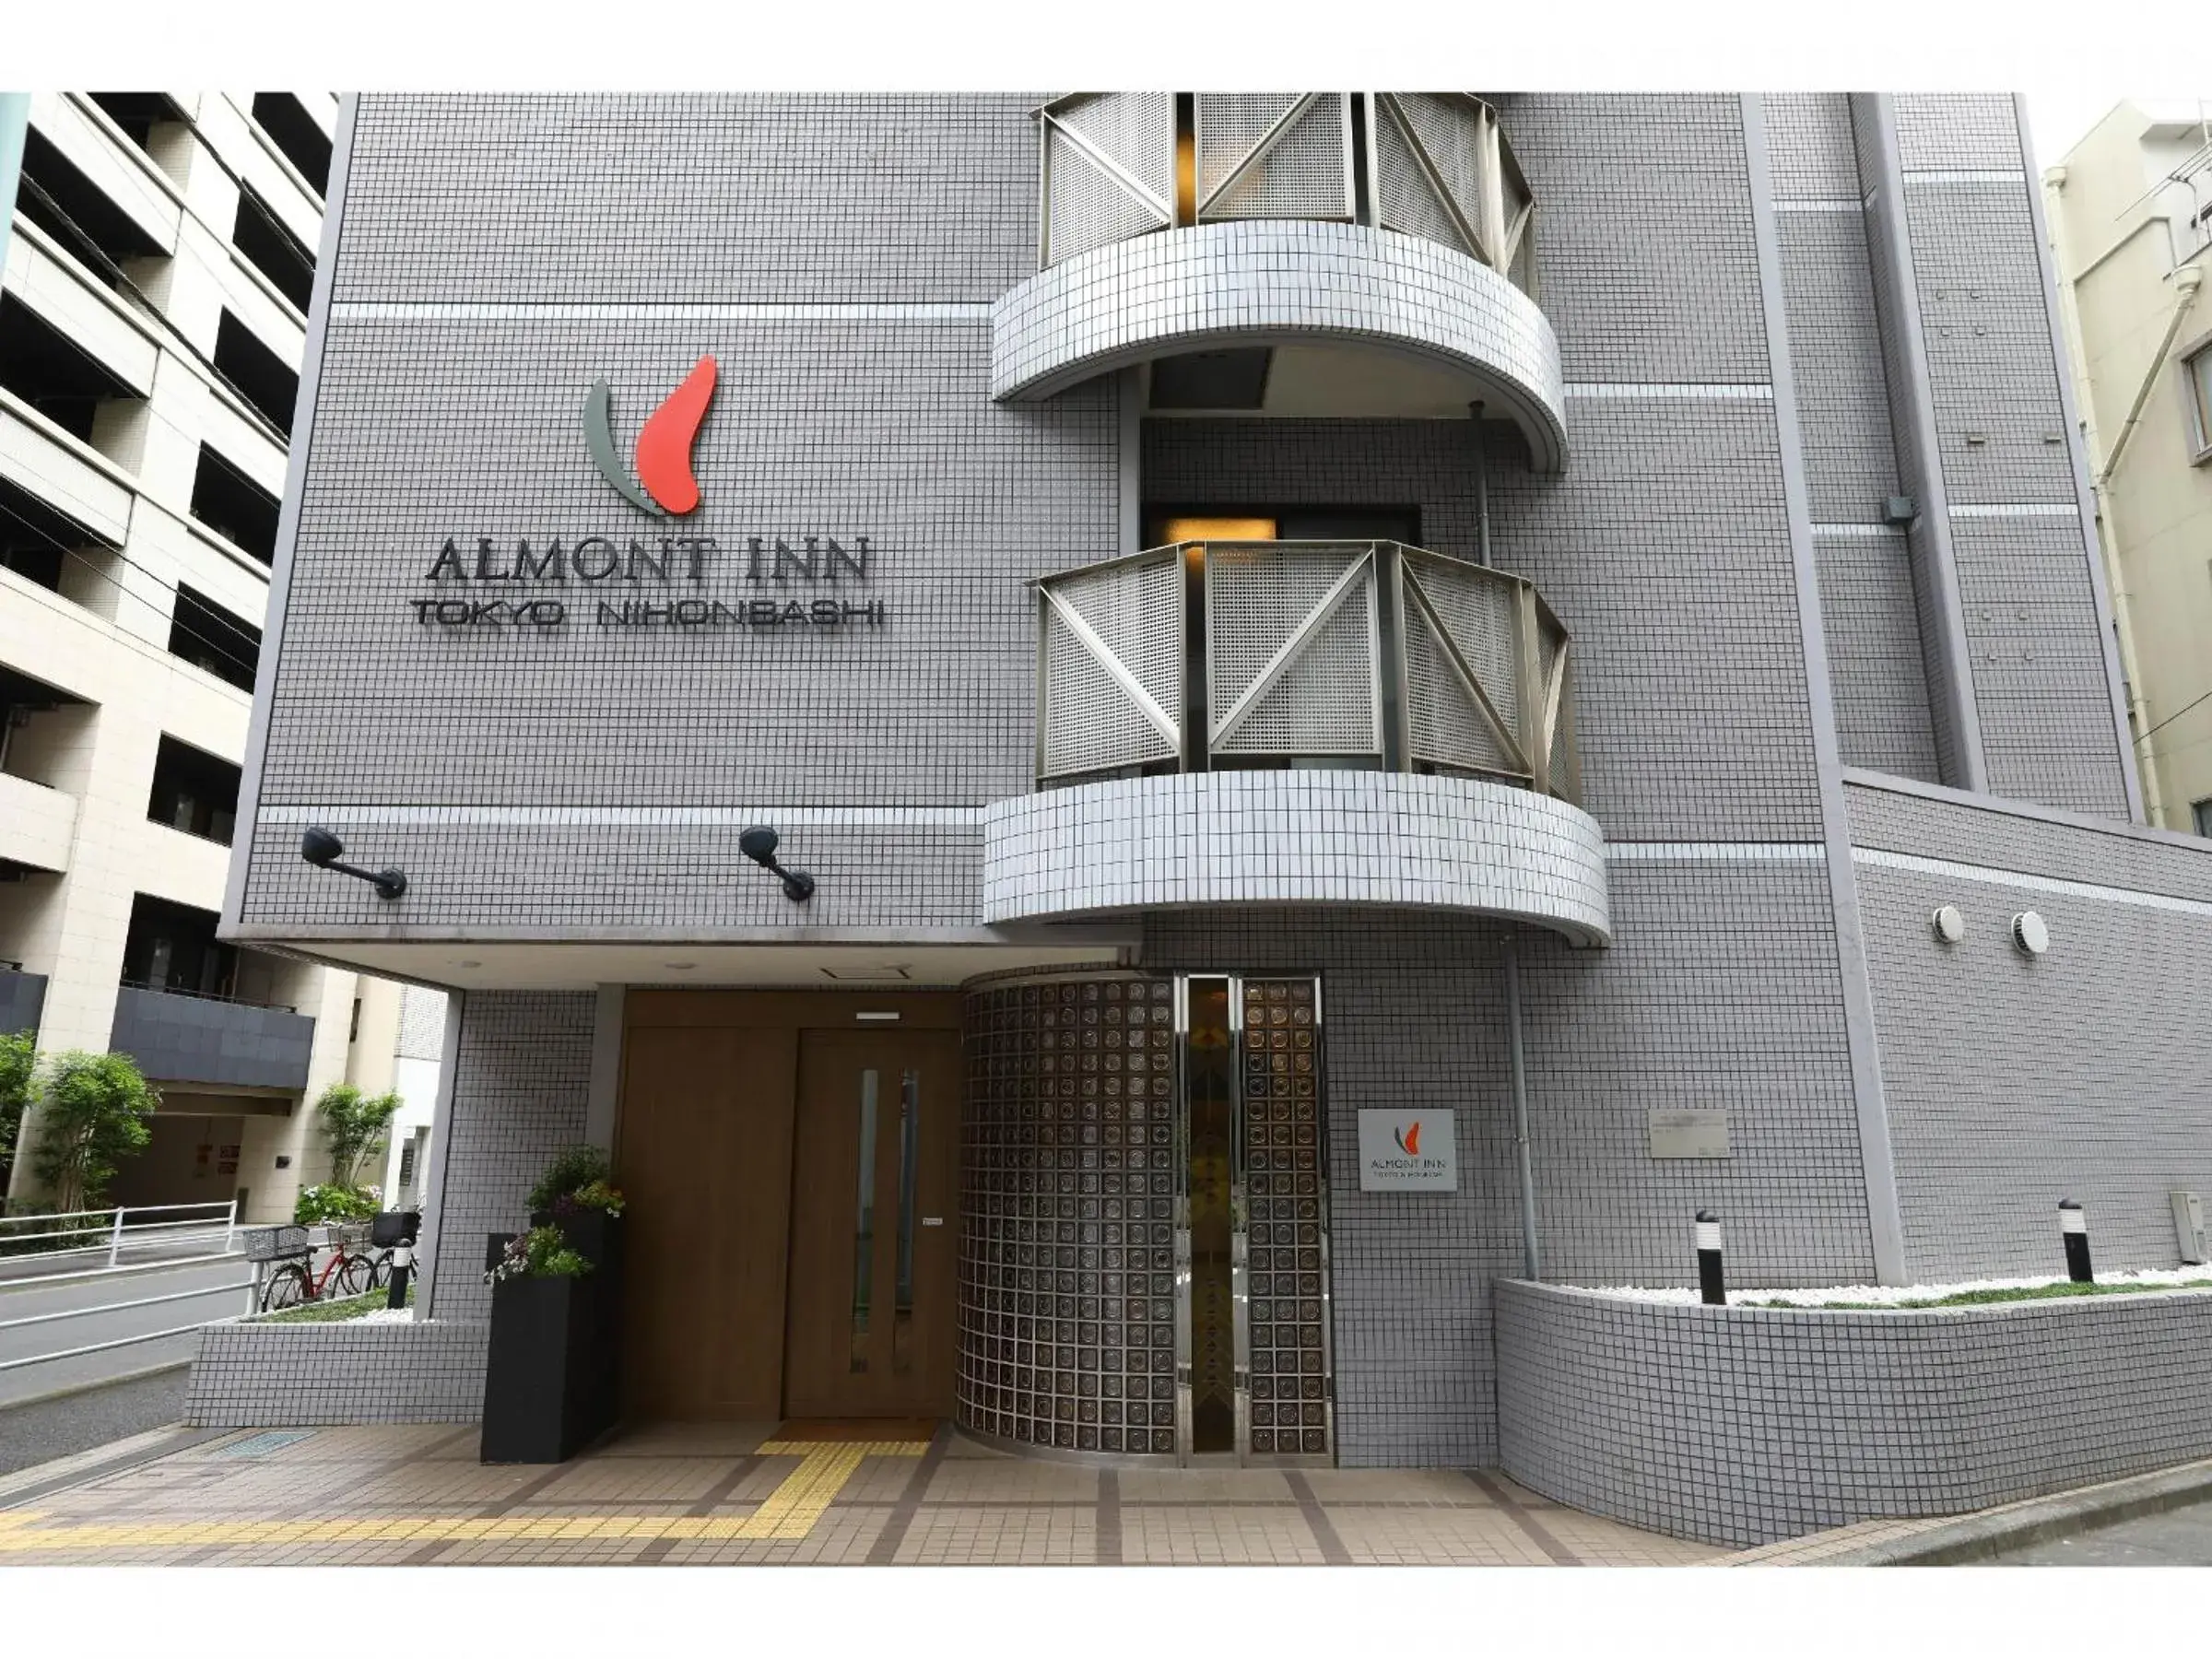 Facade/entrance, Property Building in Almont Inn Tokyo Nihonbashi